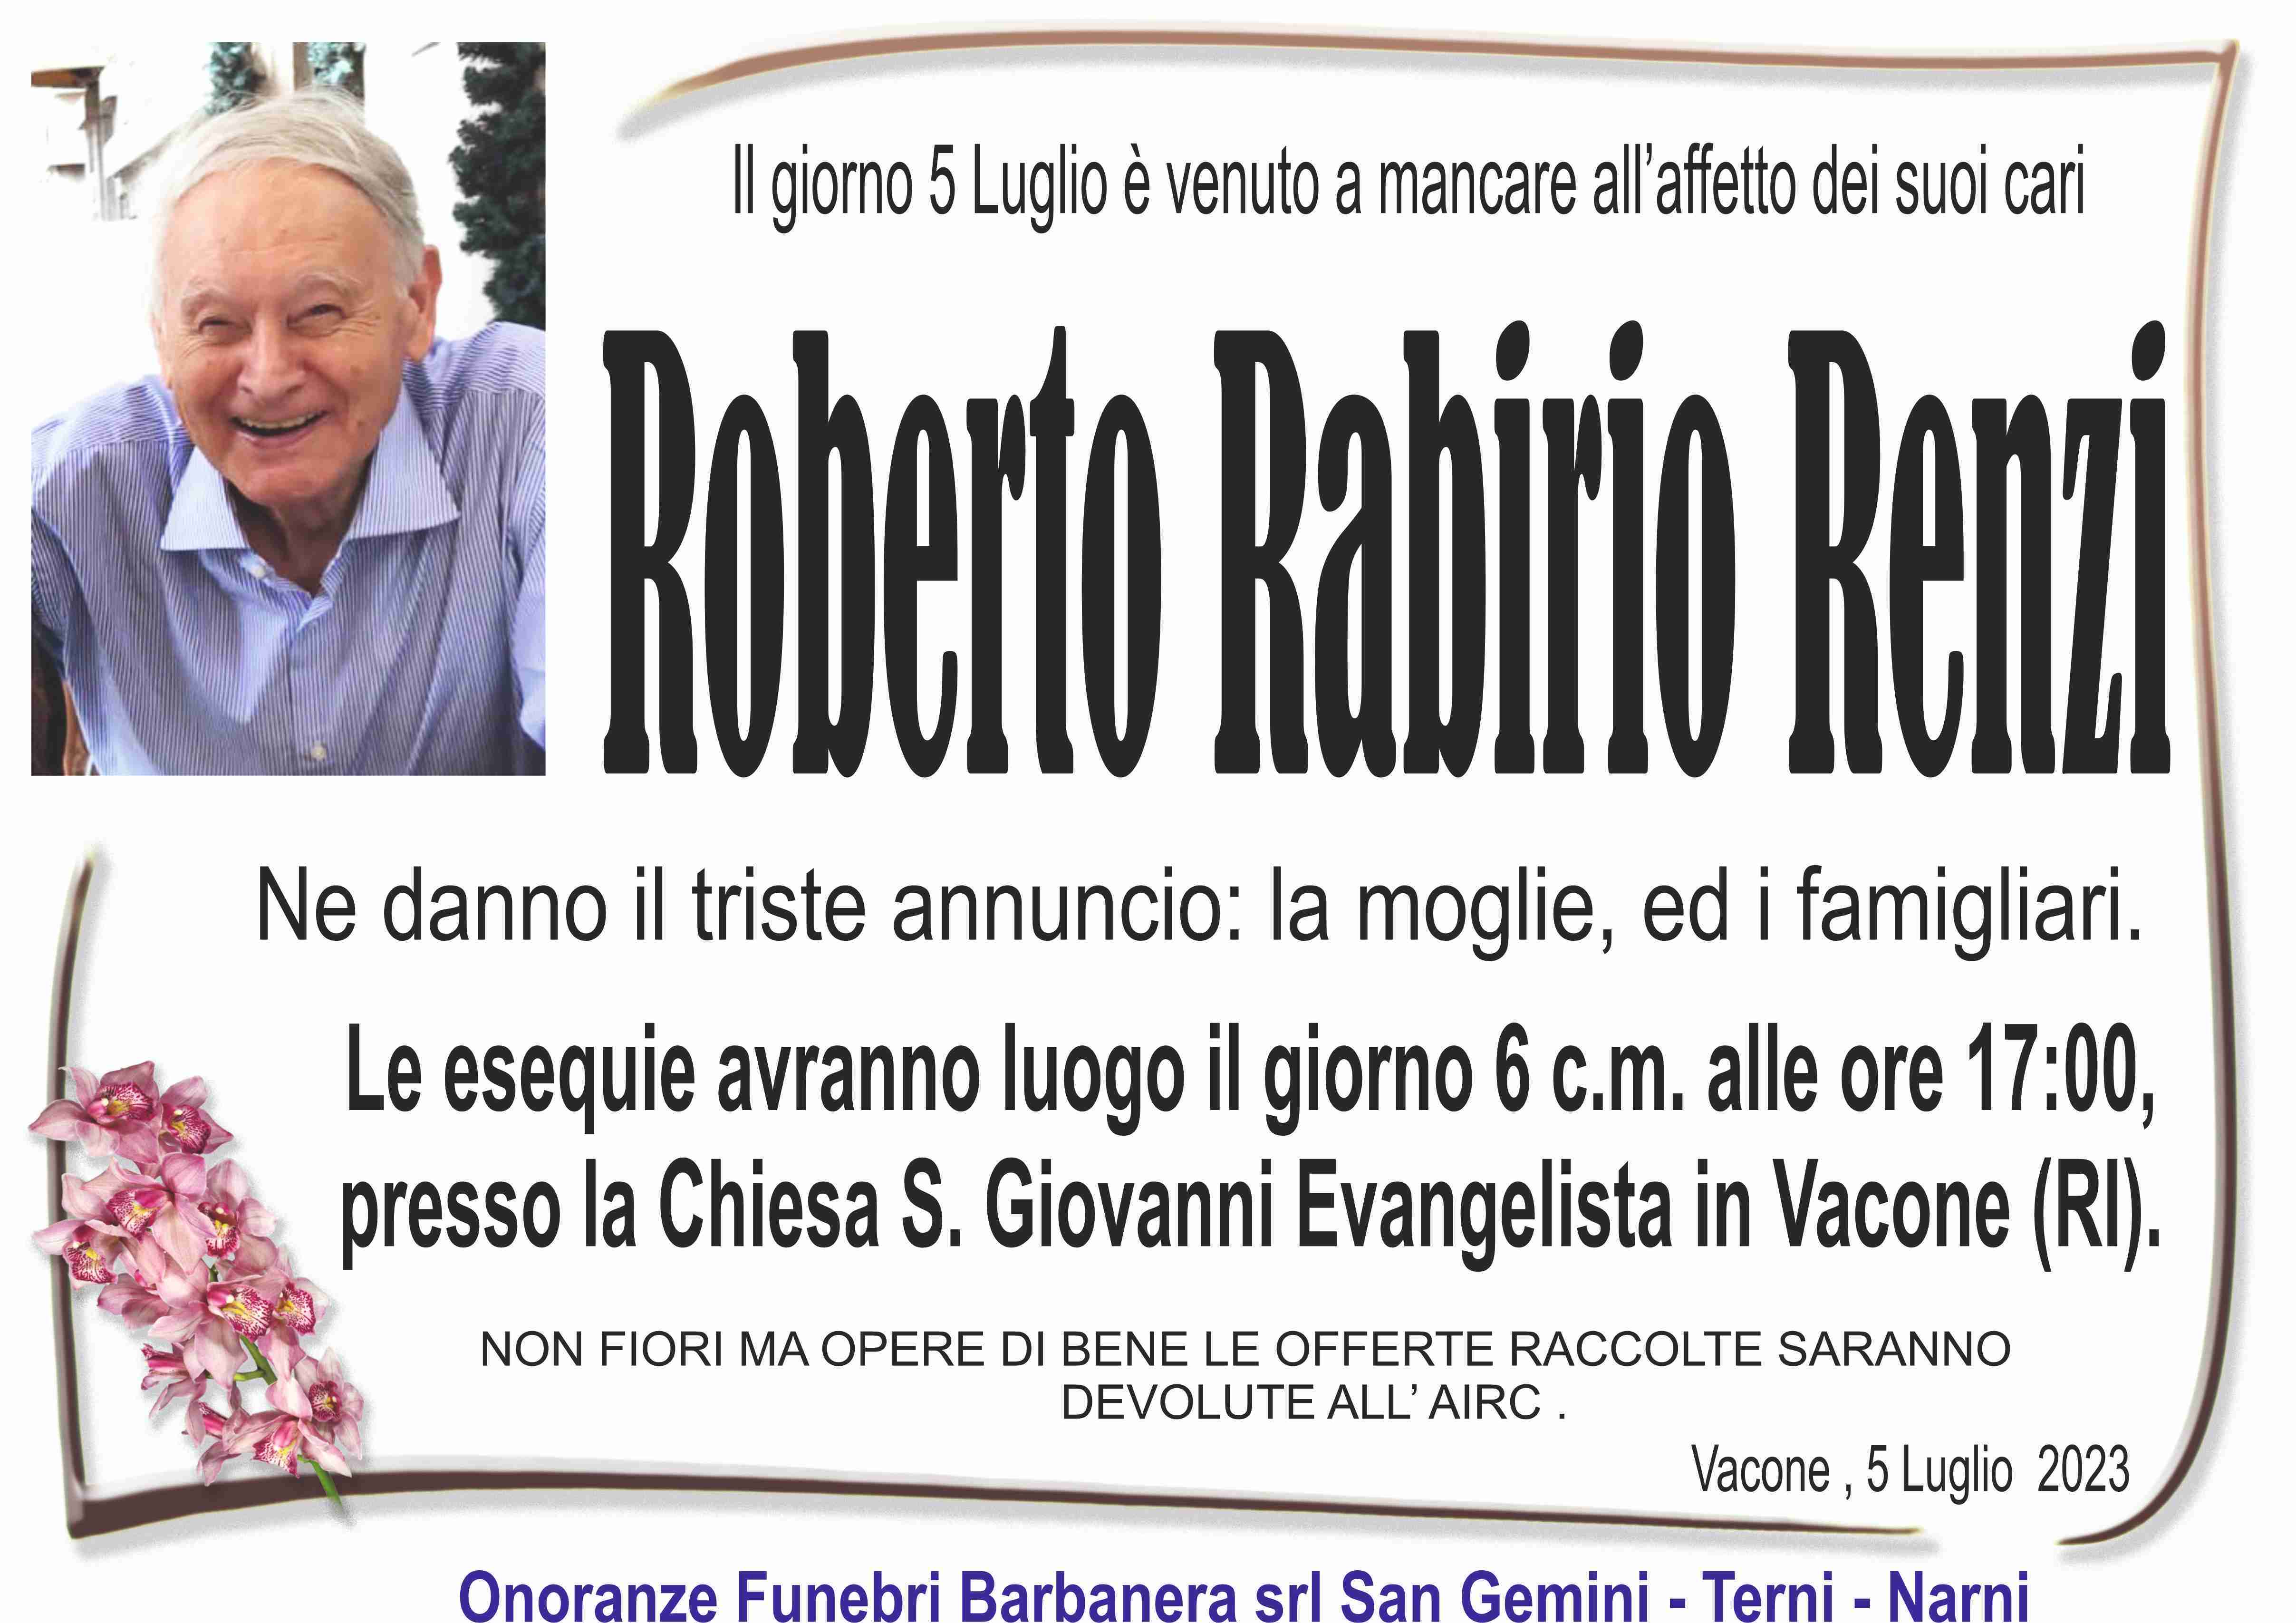 Renzo Rabirio Renzi